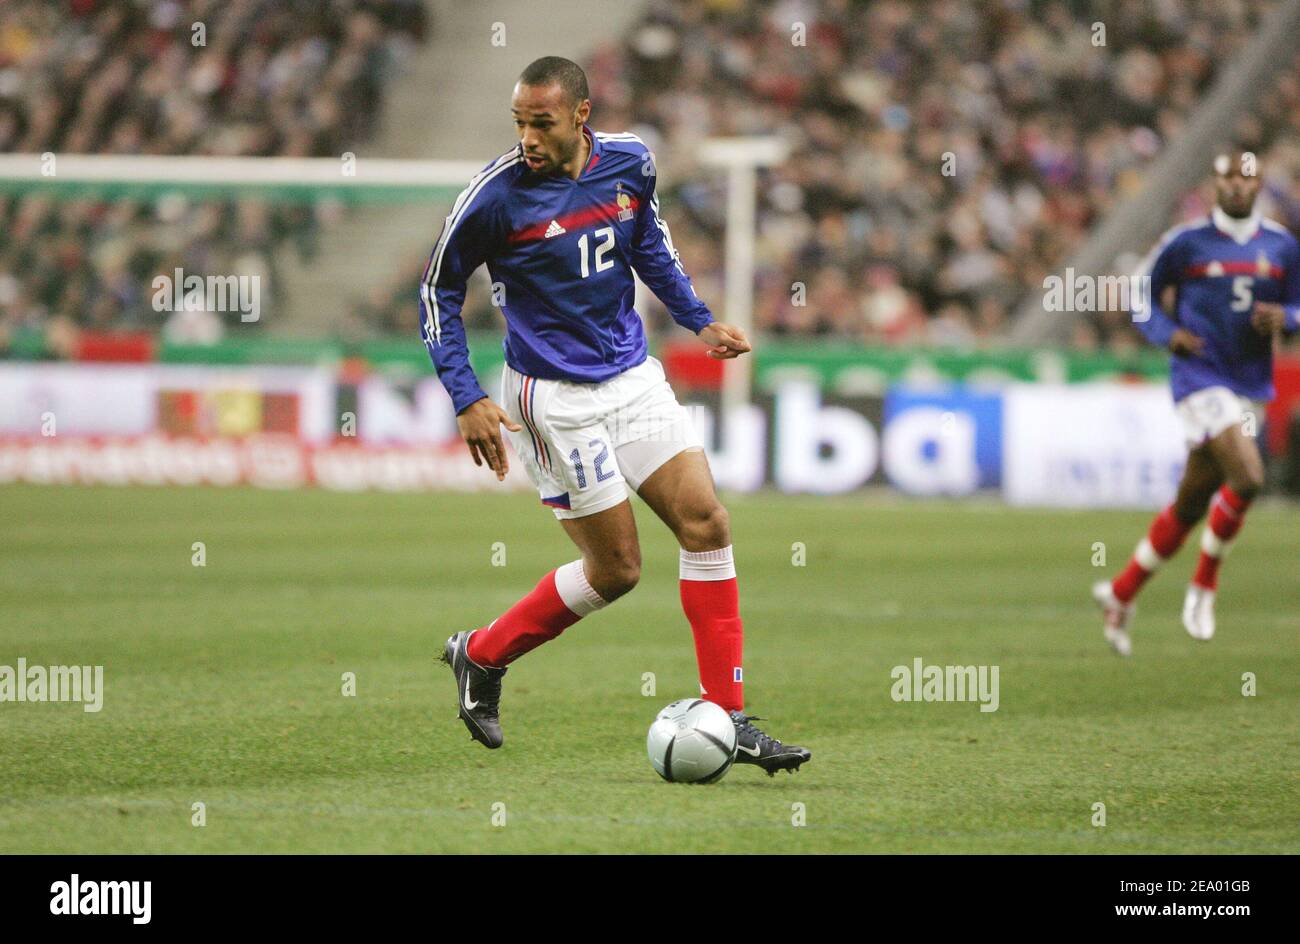 Il giocatore di calcio francese Thierry Henry durante la partita amichevole  (Francia-Svezia) allo Stade de France a Saint Denis, Francia, il 9 febbraio  2005. (Francia (1)-Svezia (1). Foto di Laurent Zabulon/Cameleon/ABACA Foto